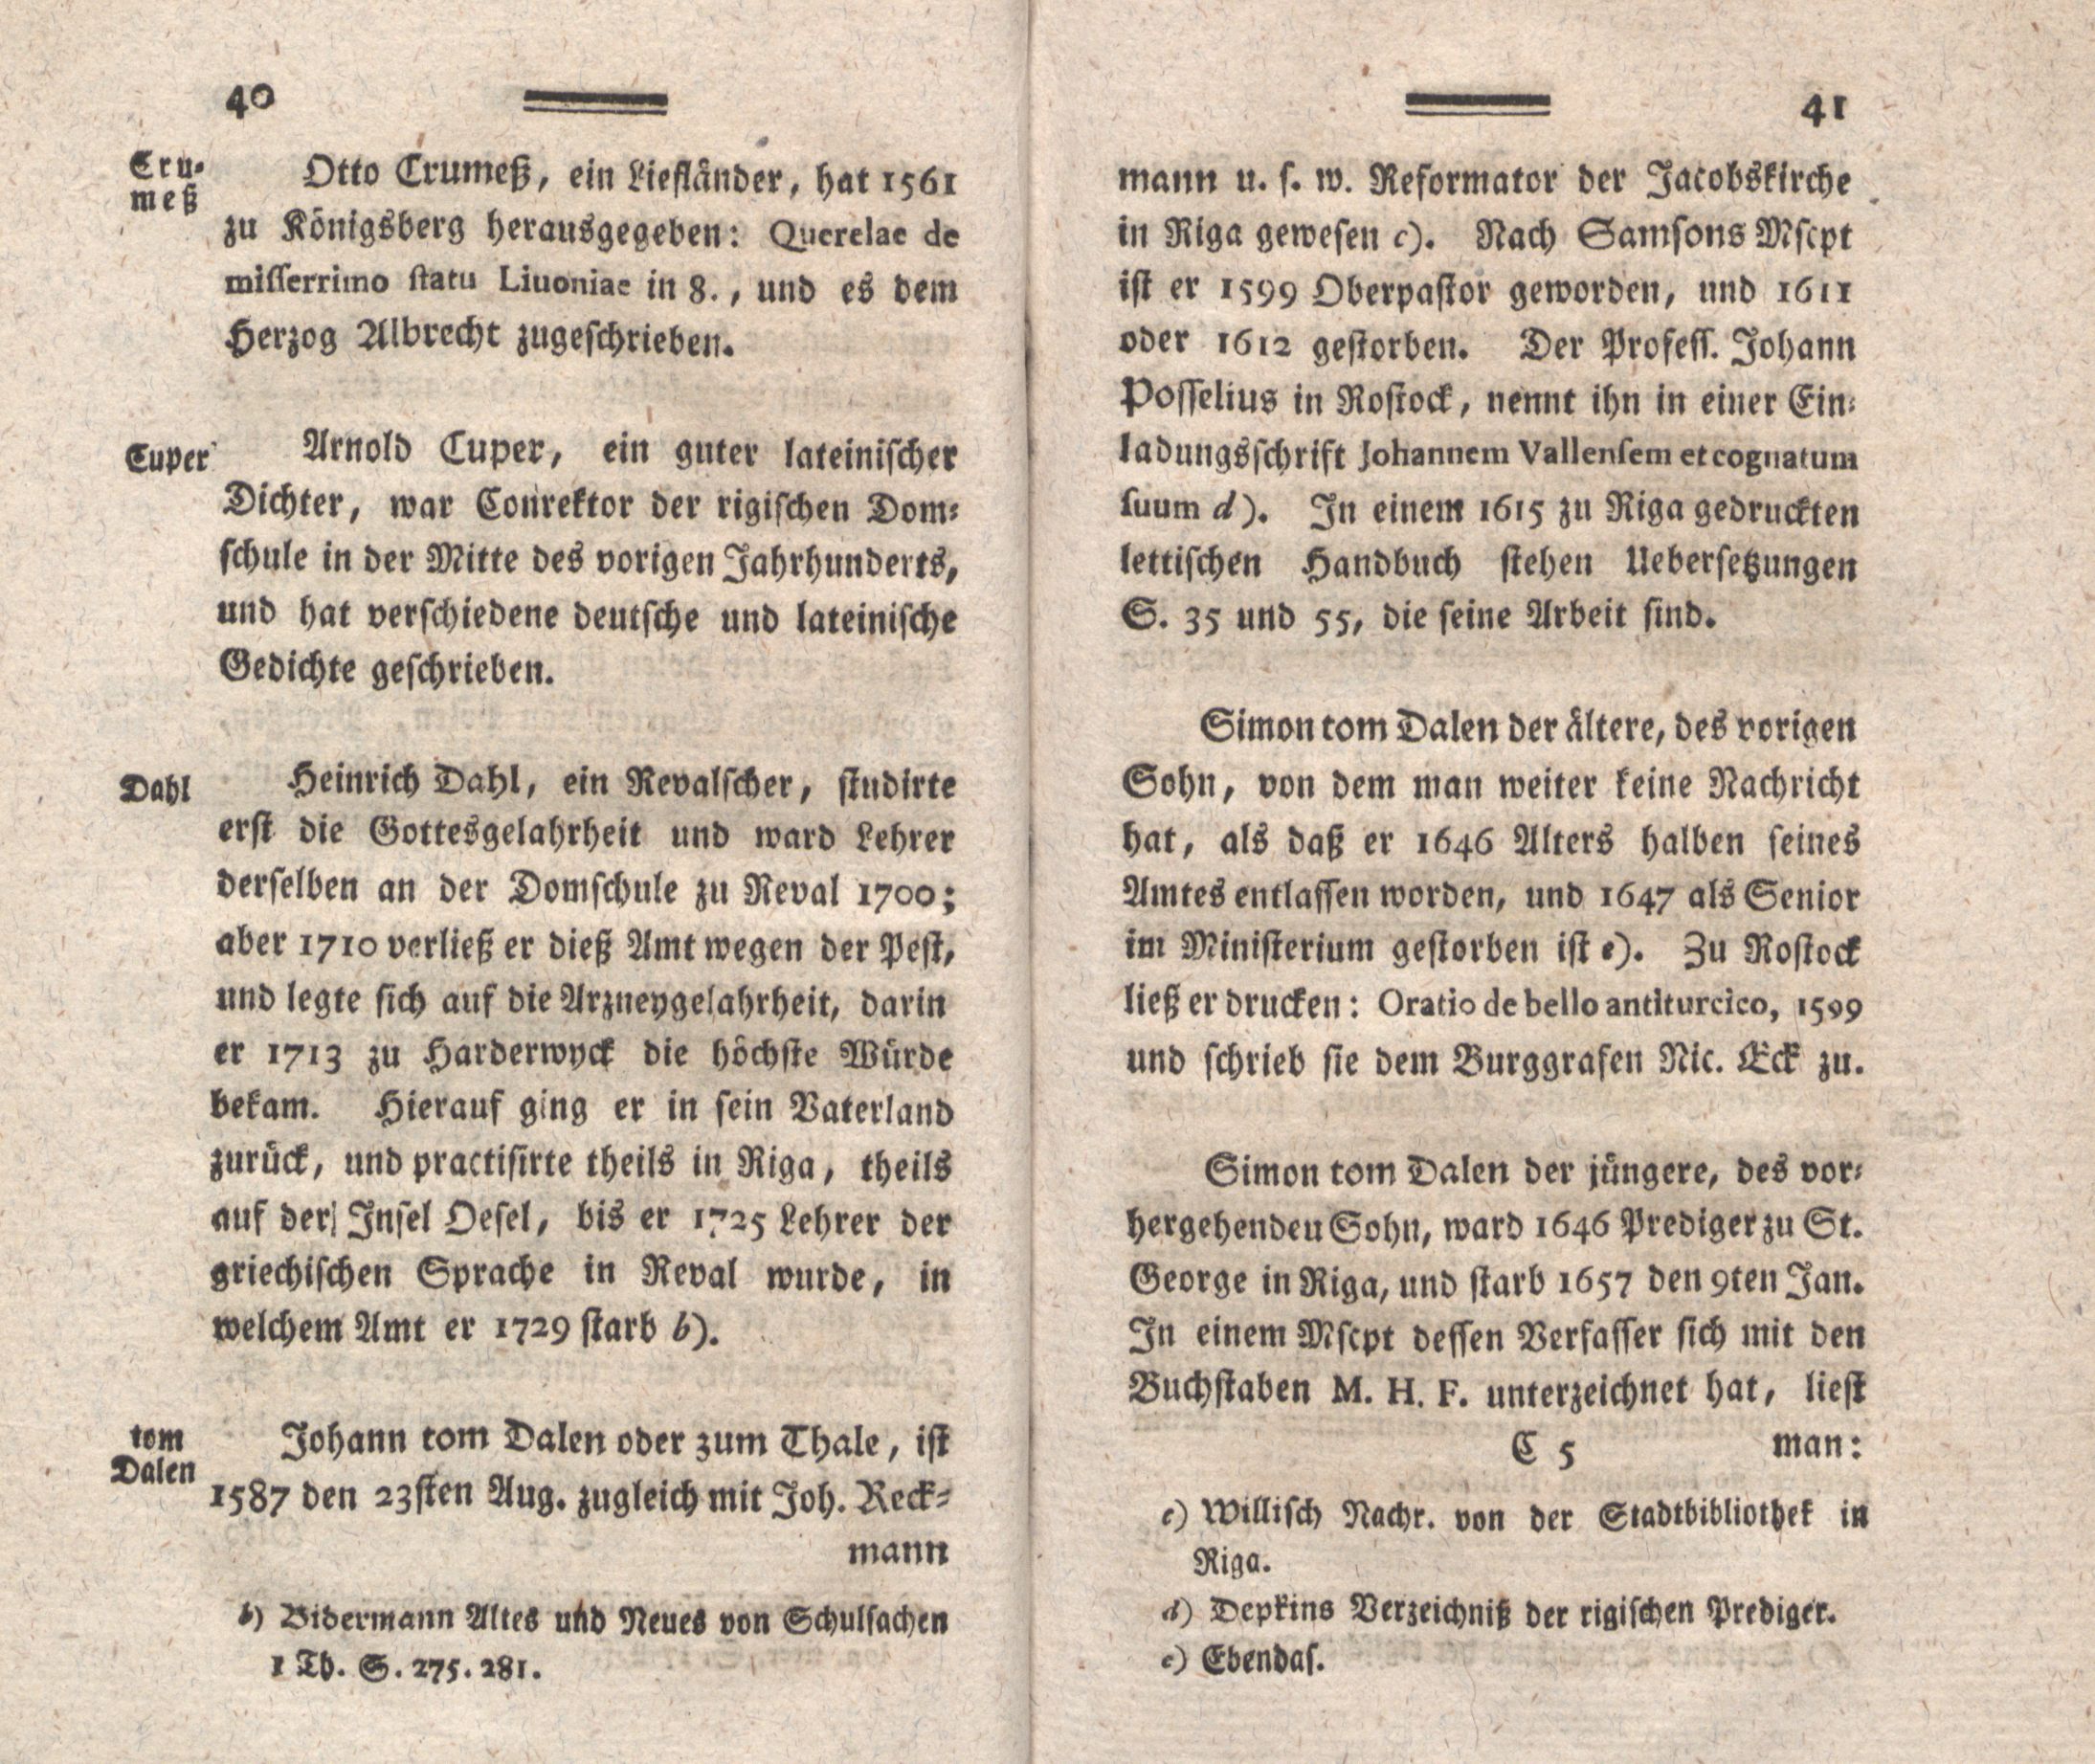 Nordische Miscellaneen [04] (1782) | 22. (40-41) Main body of text